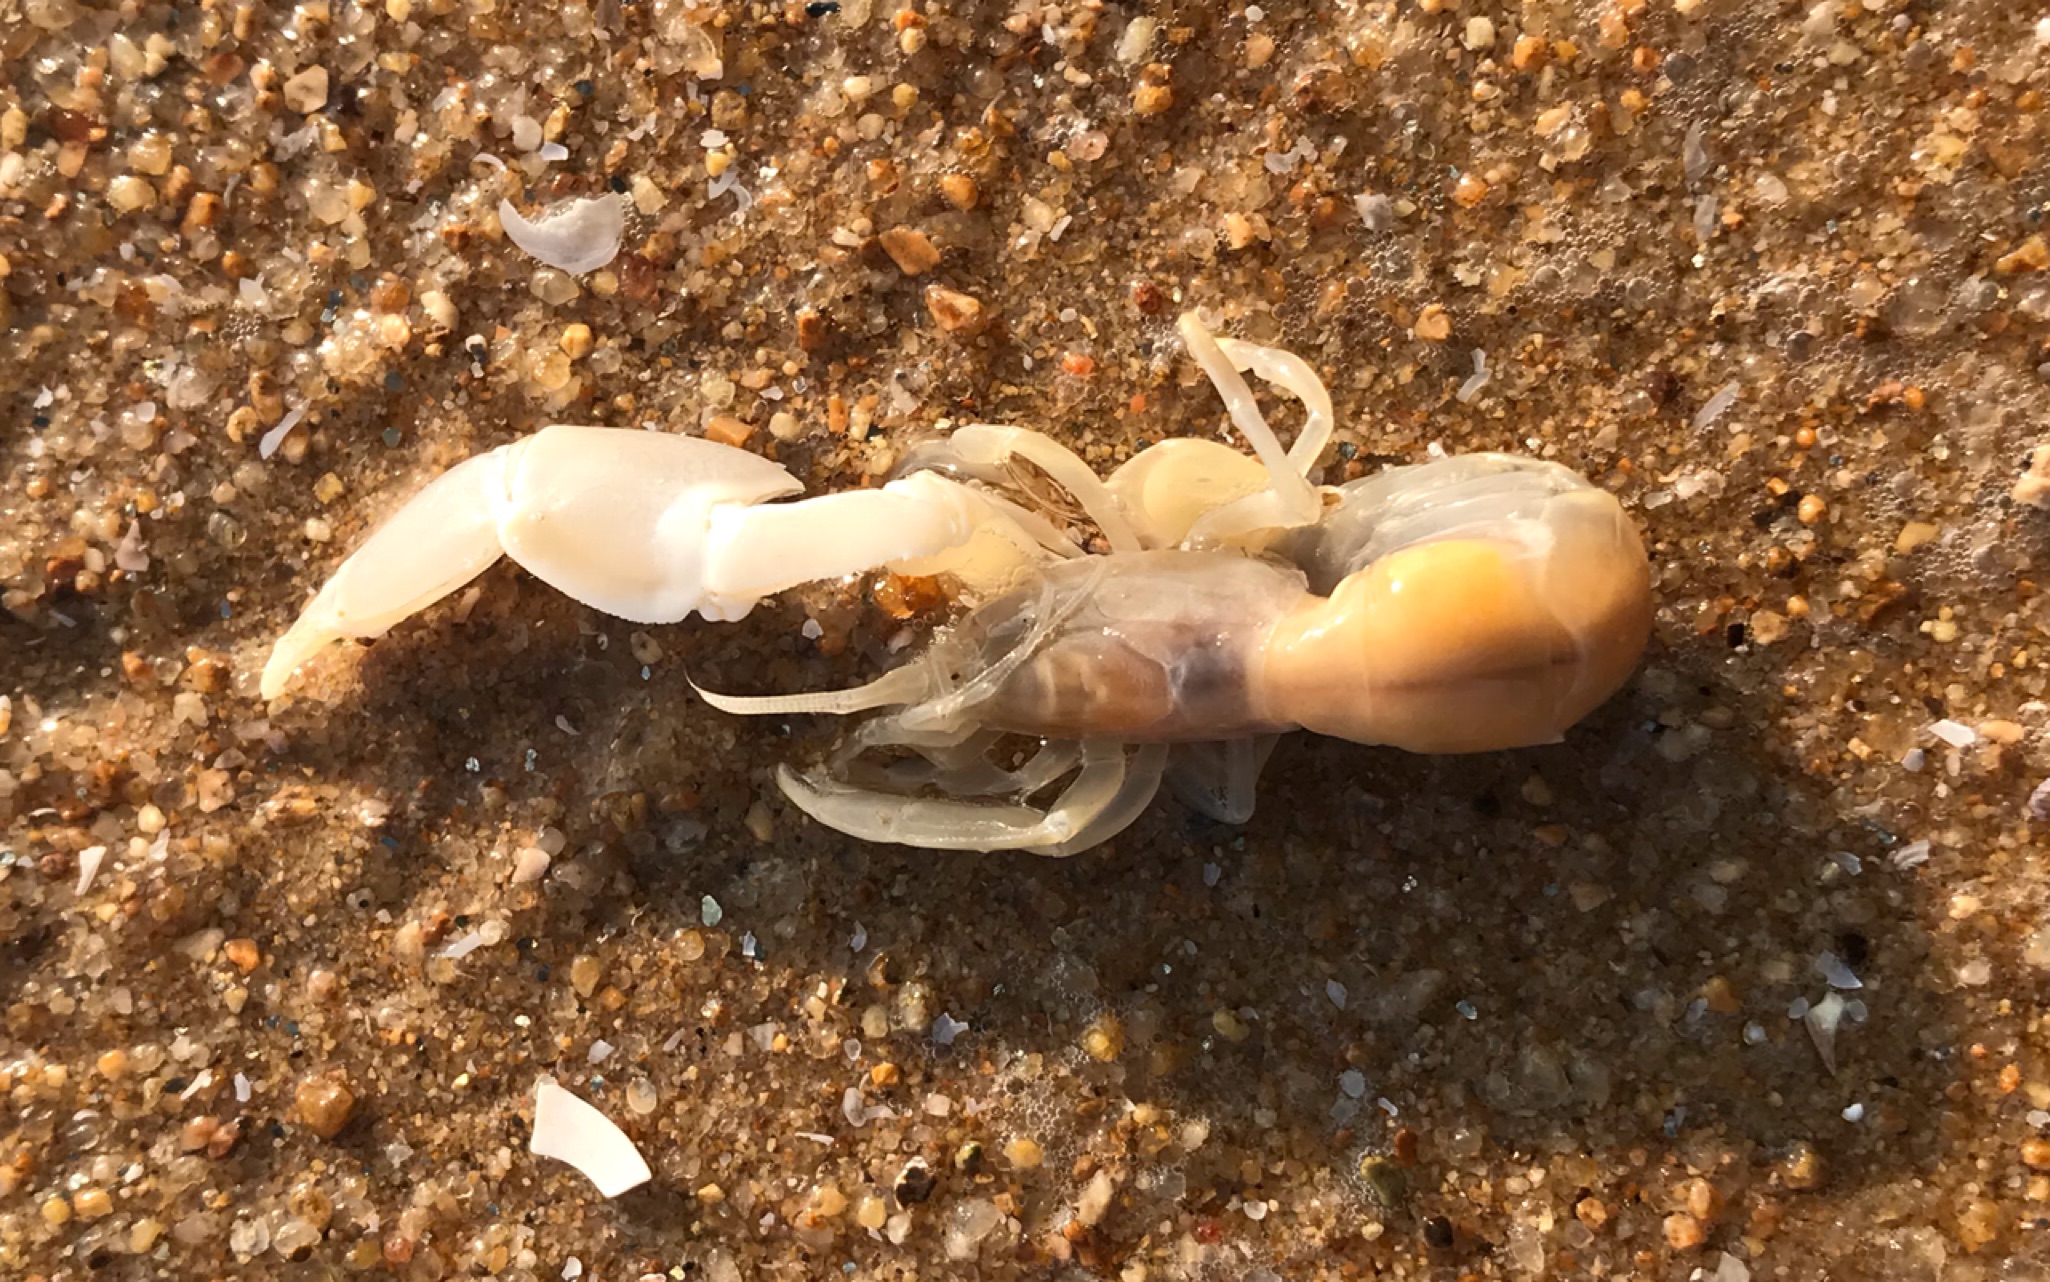 【沙滩日常】在海边发现皮皮虾,原以为是拖着塑料,没想到竟是一只